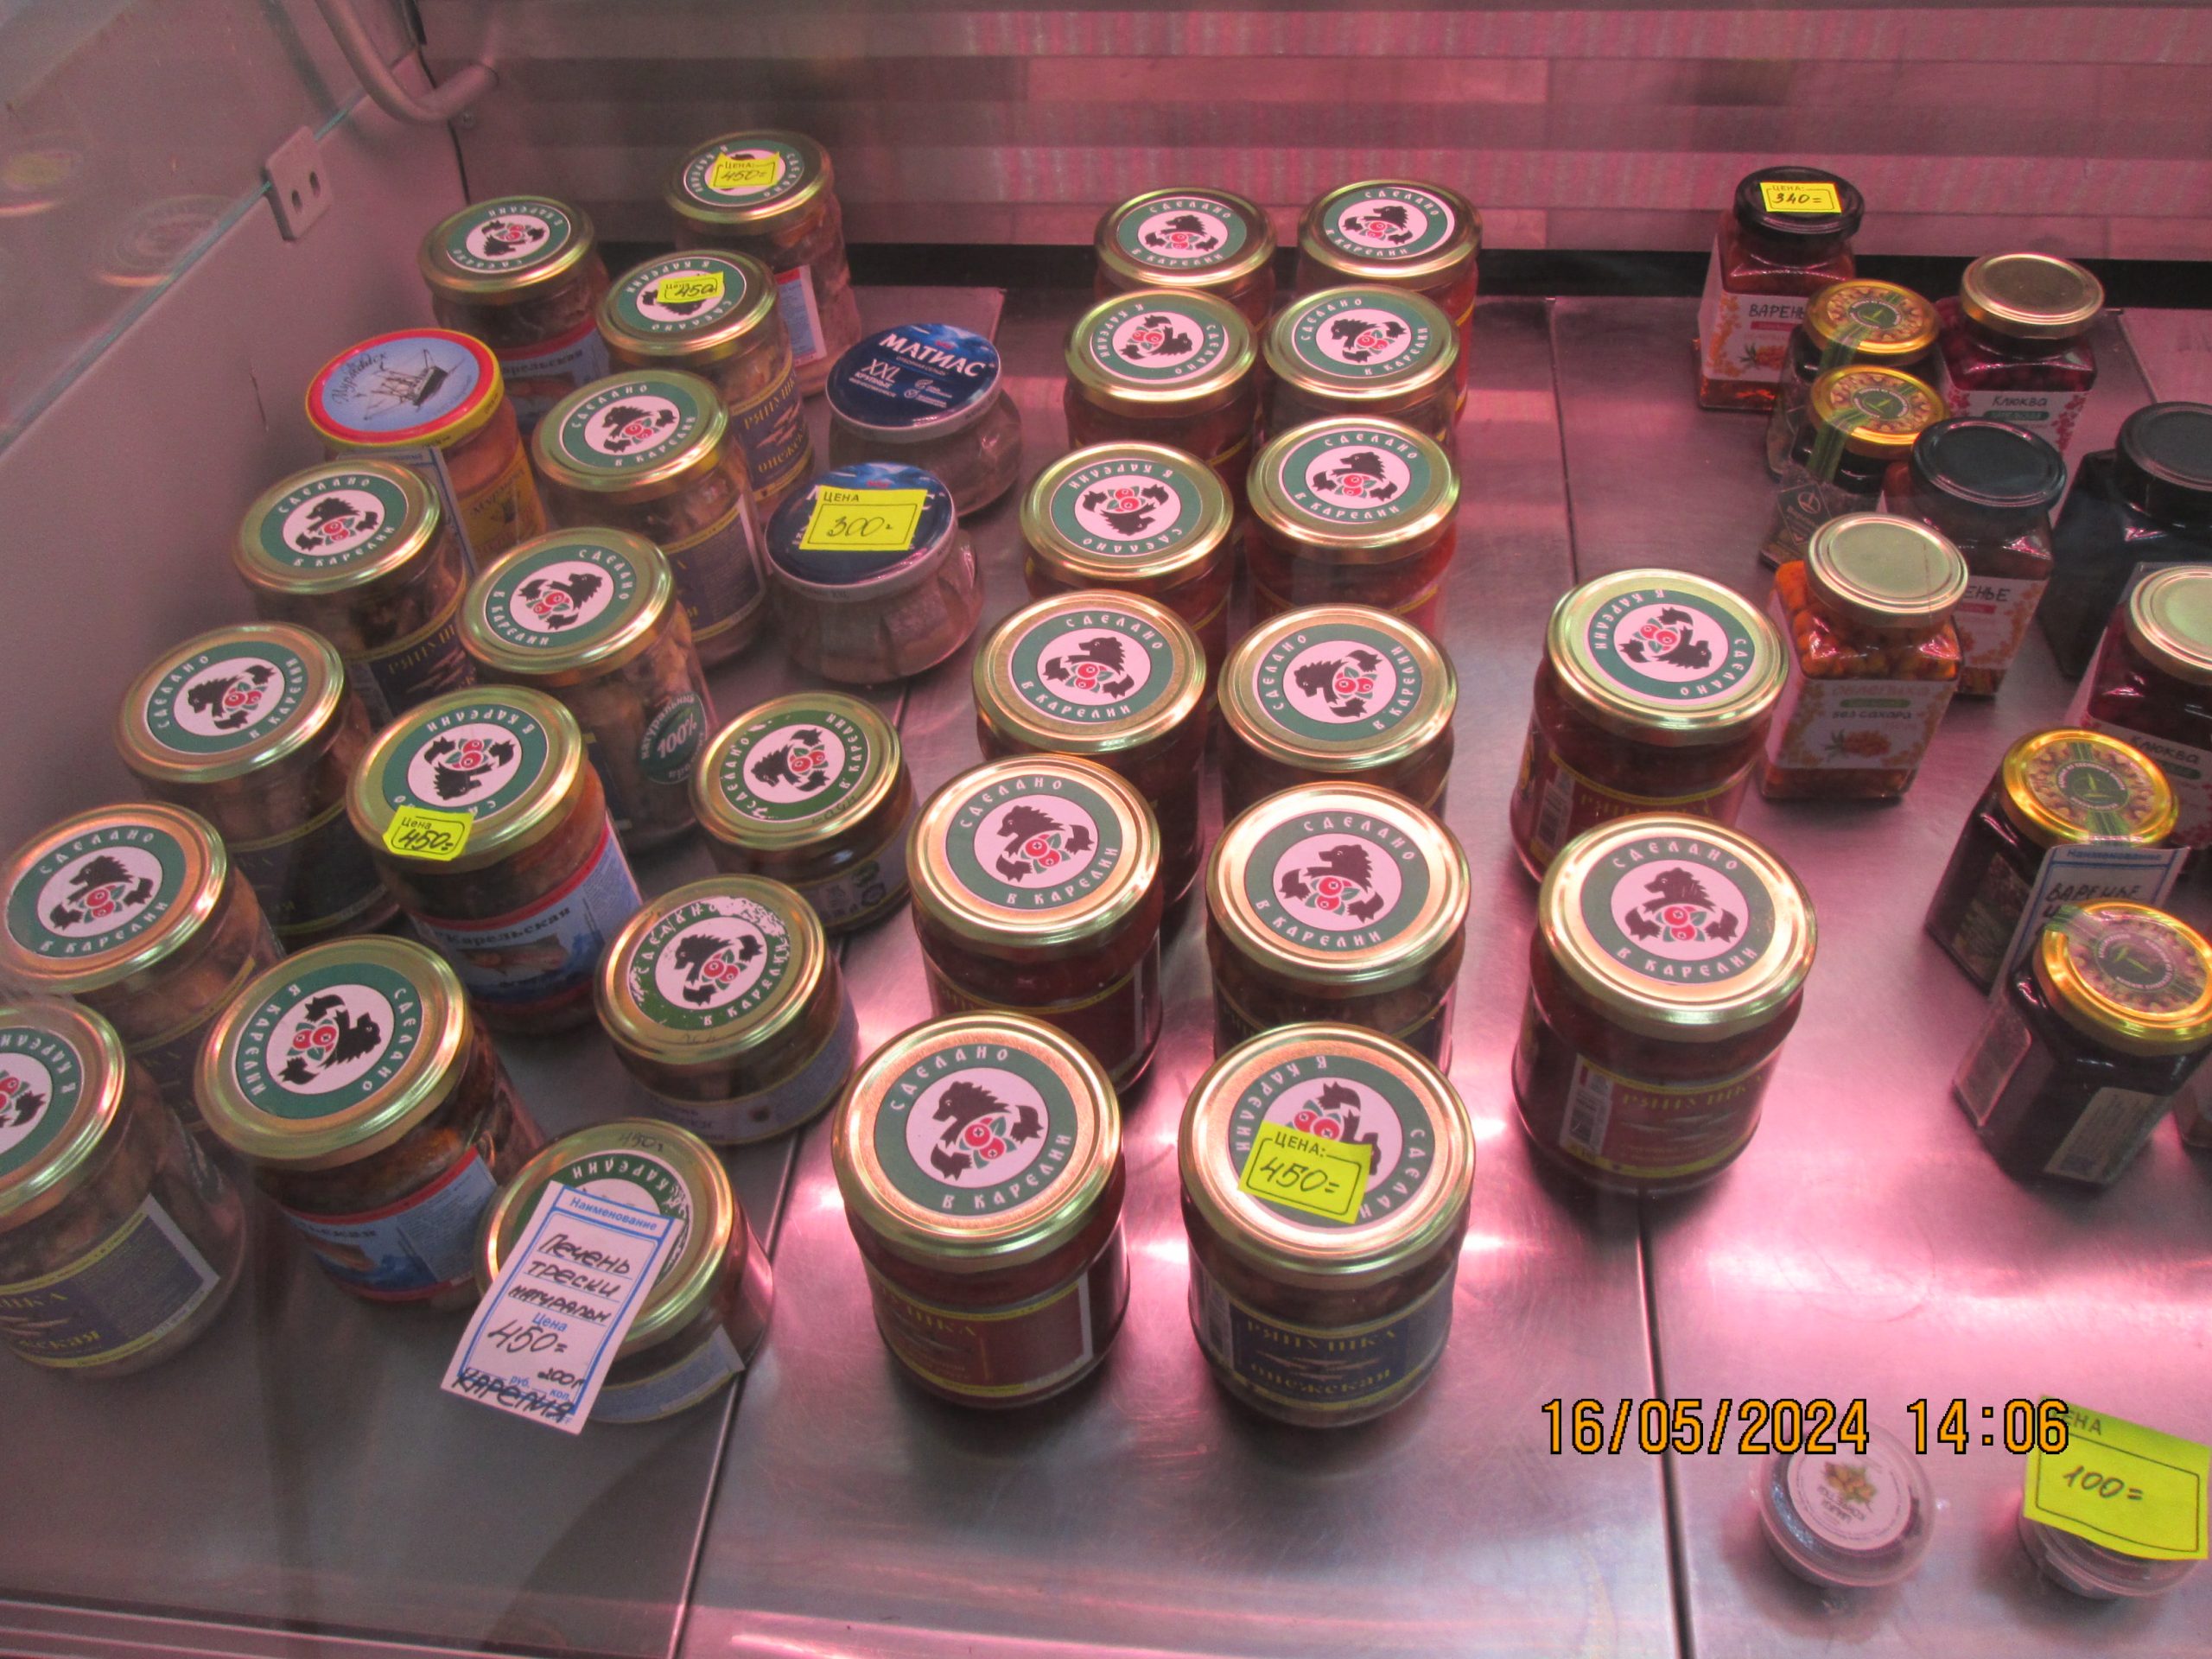 Мед и рыбные консервы, опасные для здоровья, сняты с продажи в городе в Приладожье